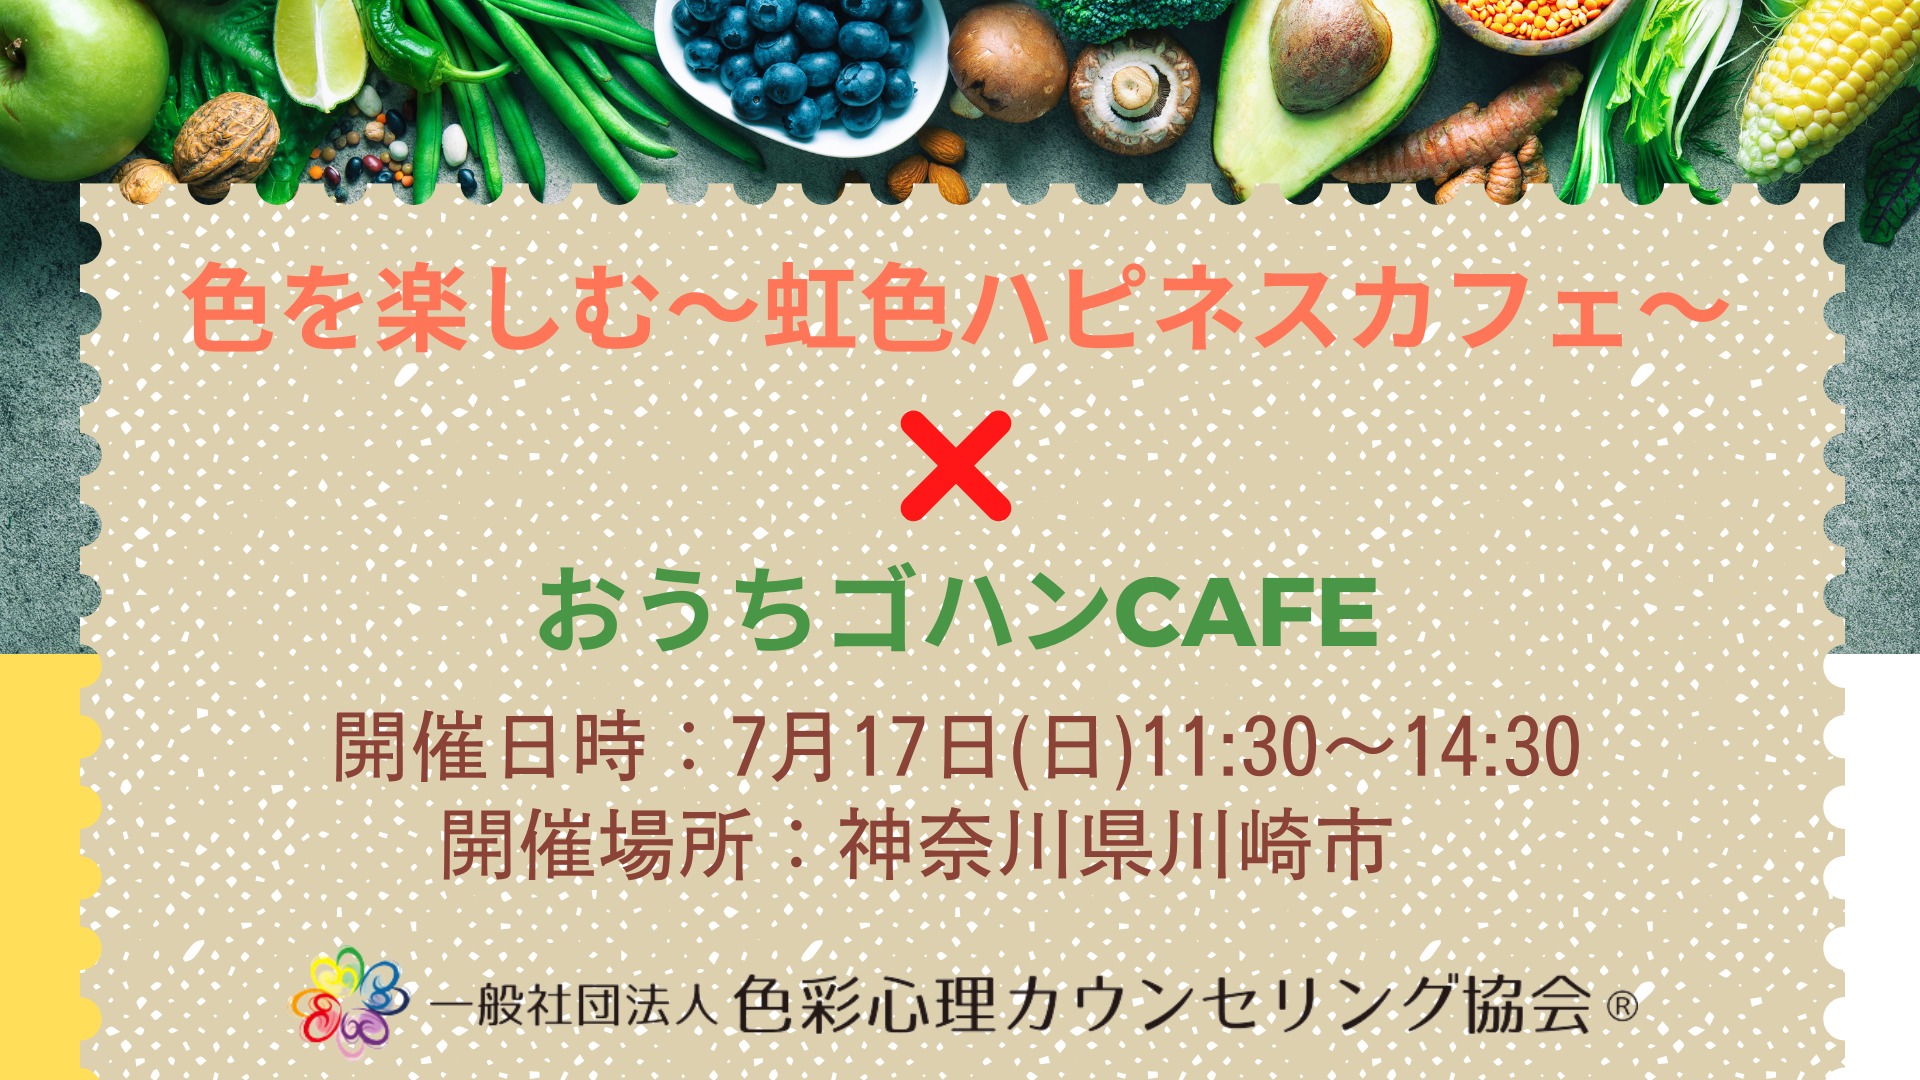 満席御礼「色を楽しむ～虹色ハピネスカフェ～」×「おうちゴハンCAFE」」in 神奈川